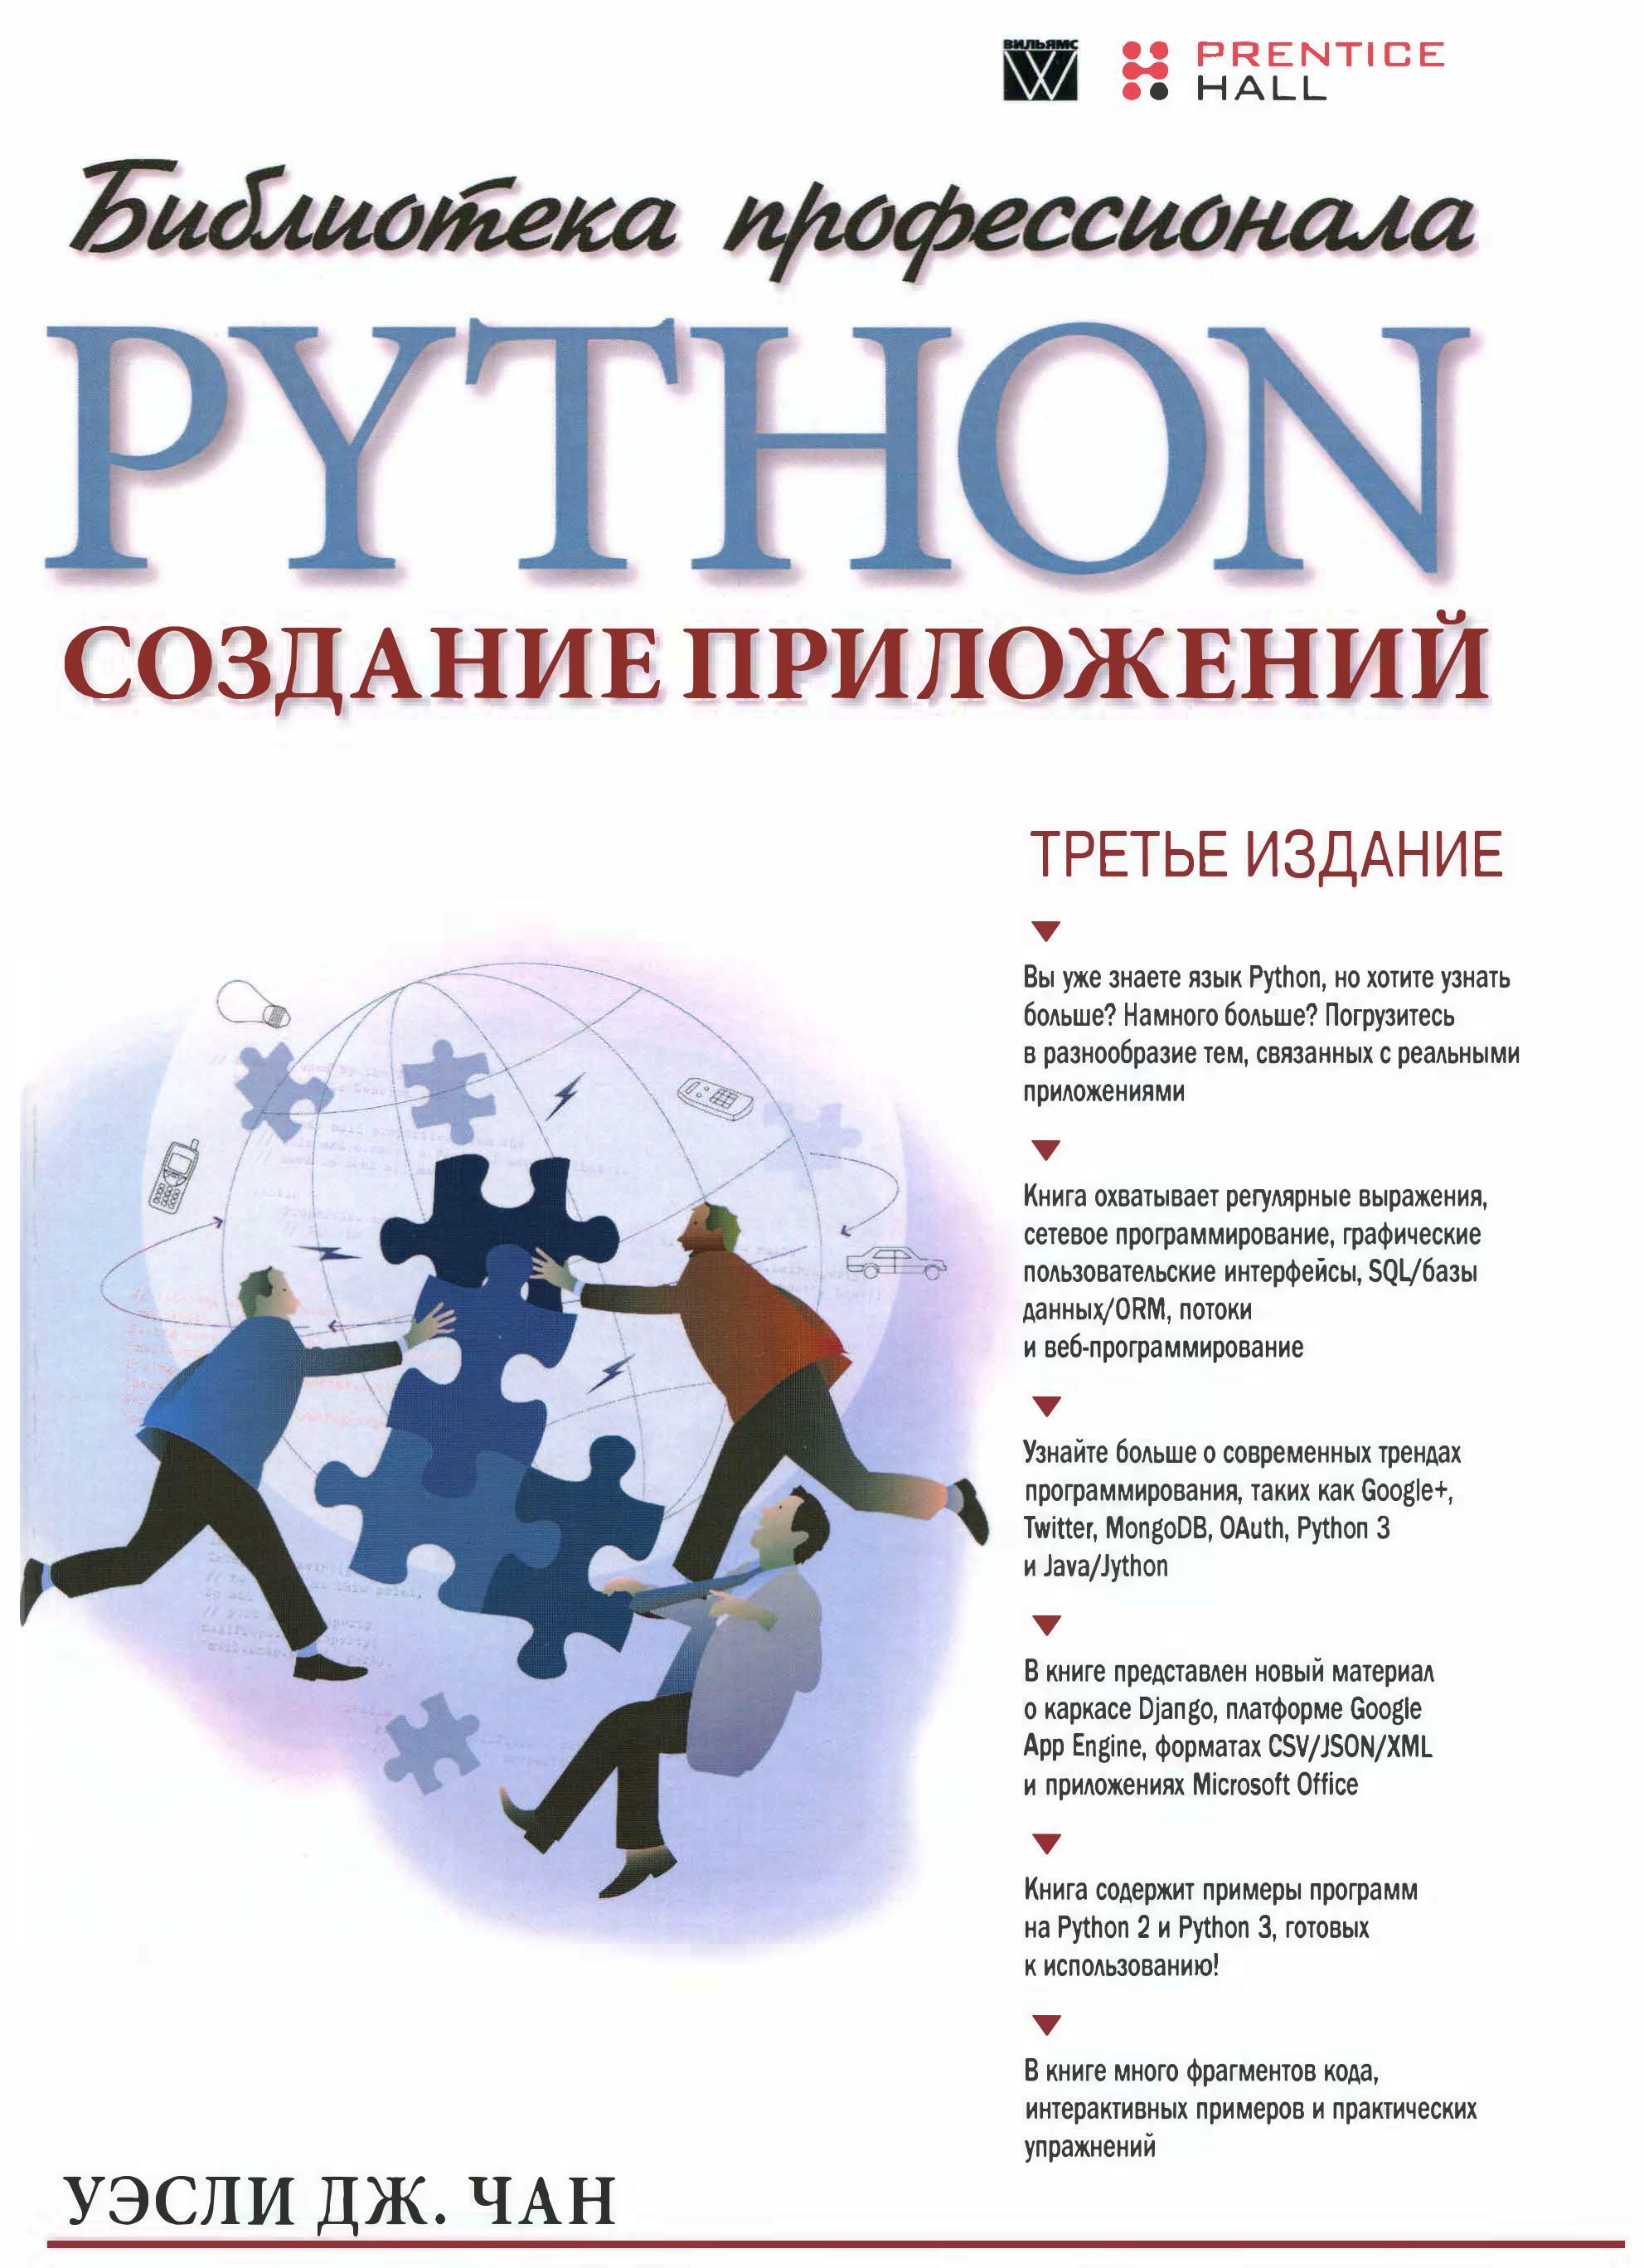 Python: создание приложений Библиотека профессионала, 3-е издание, 2015, Чан Уэсли